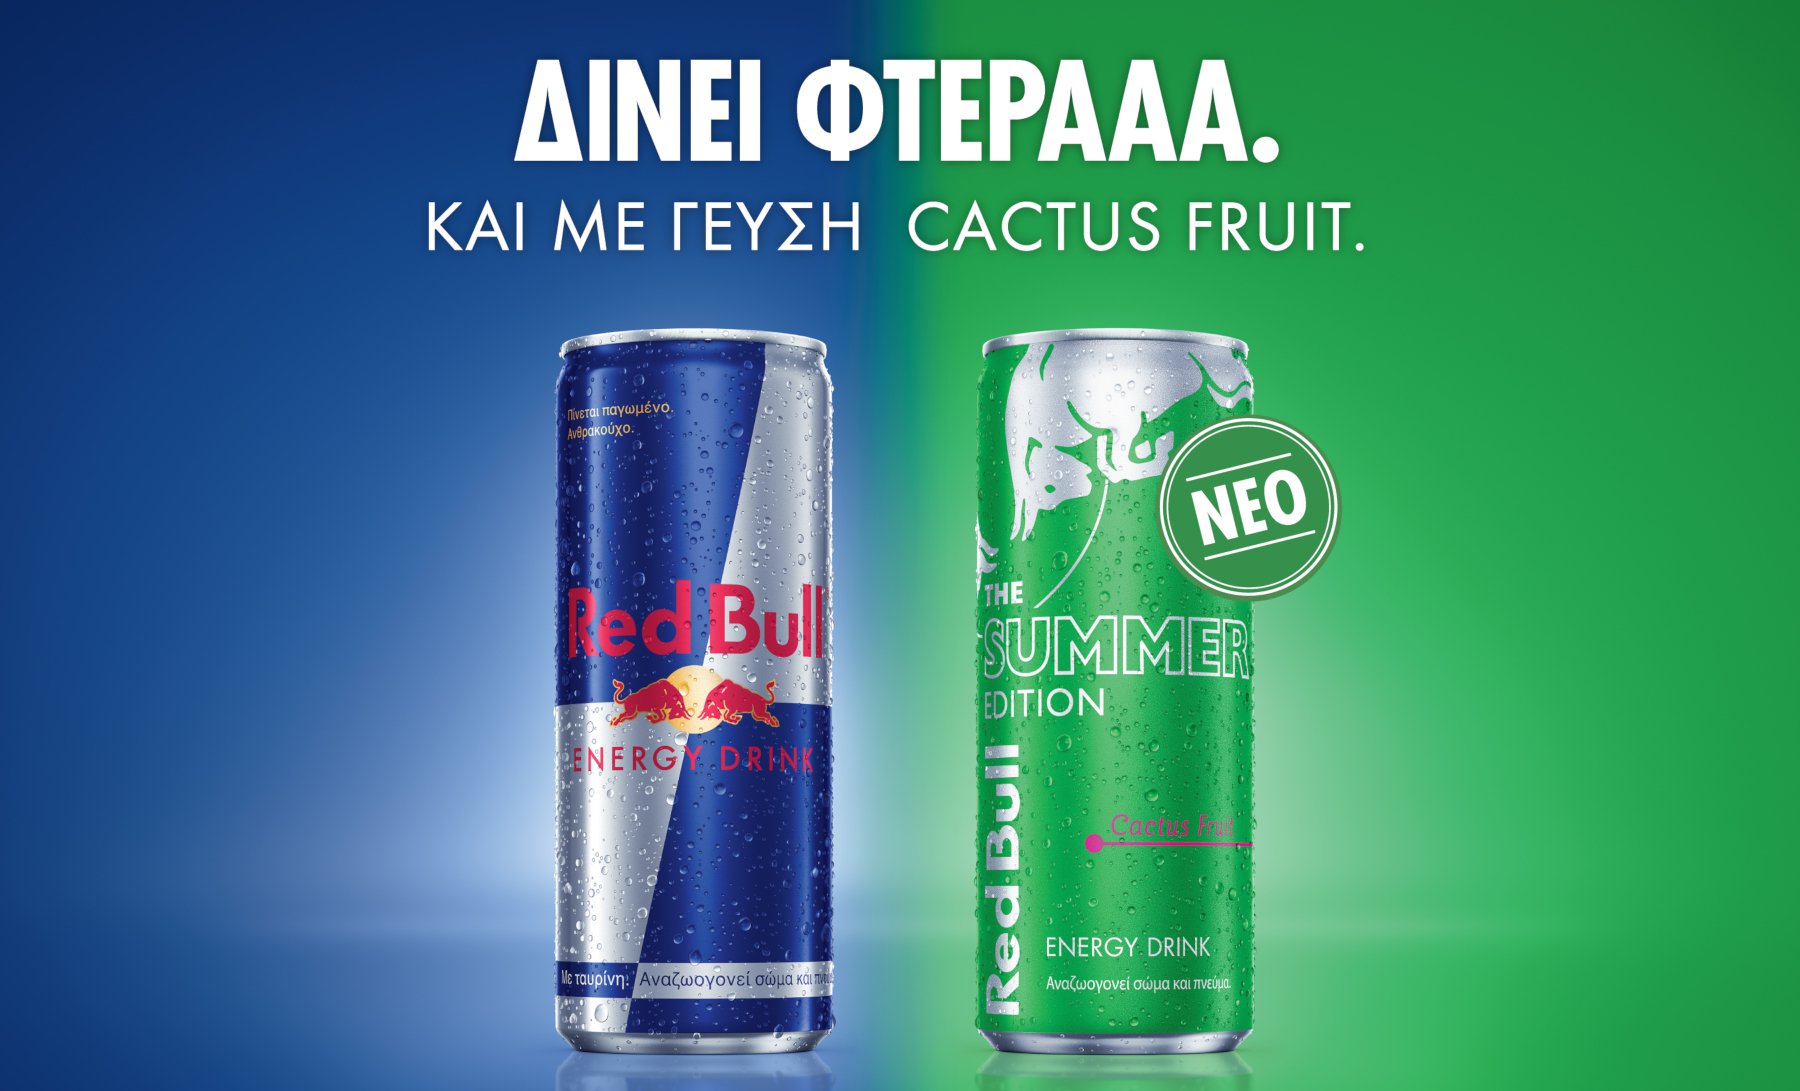 Το νέο Red Bull Summer Edition με γεύση Cactus Fruit φέρνει αέρα καλοκαιριού